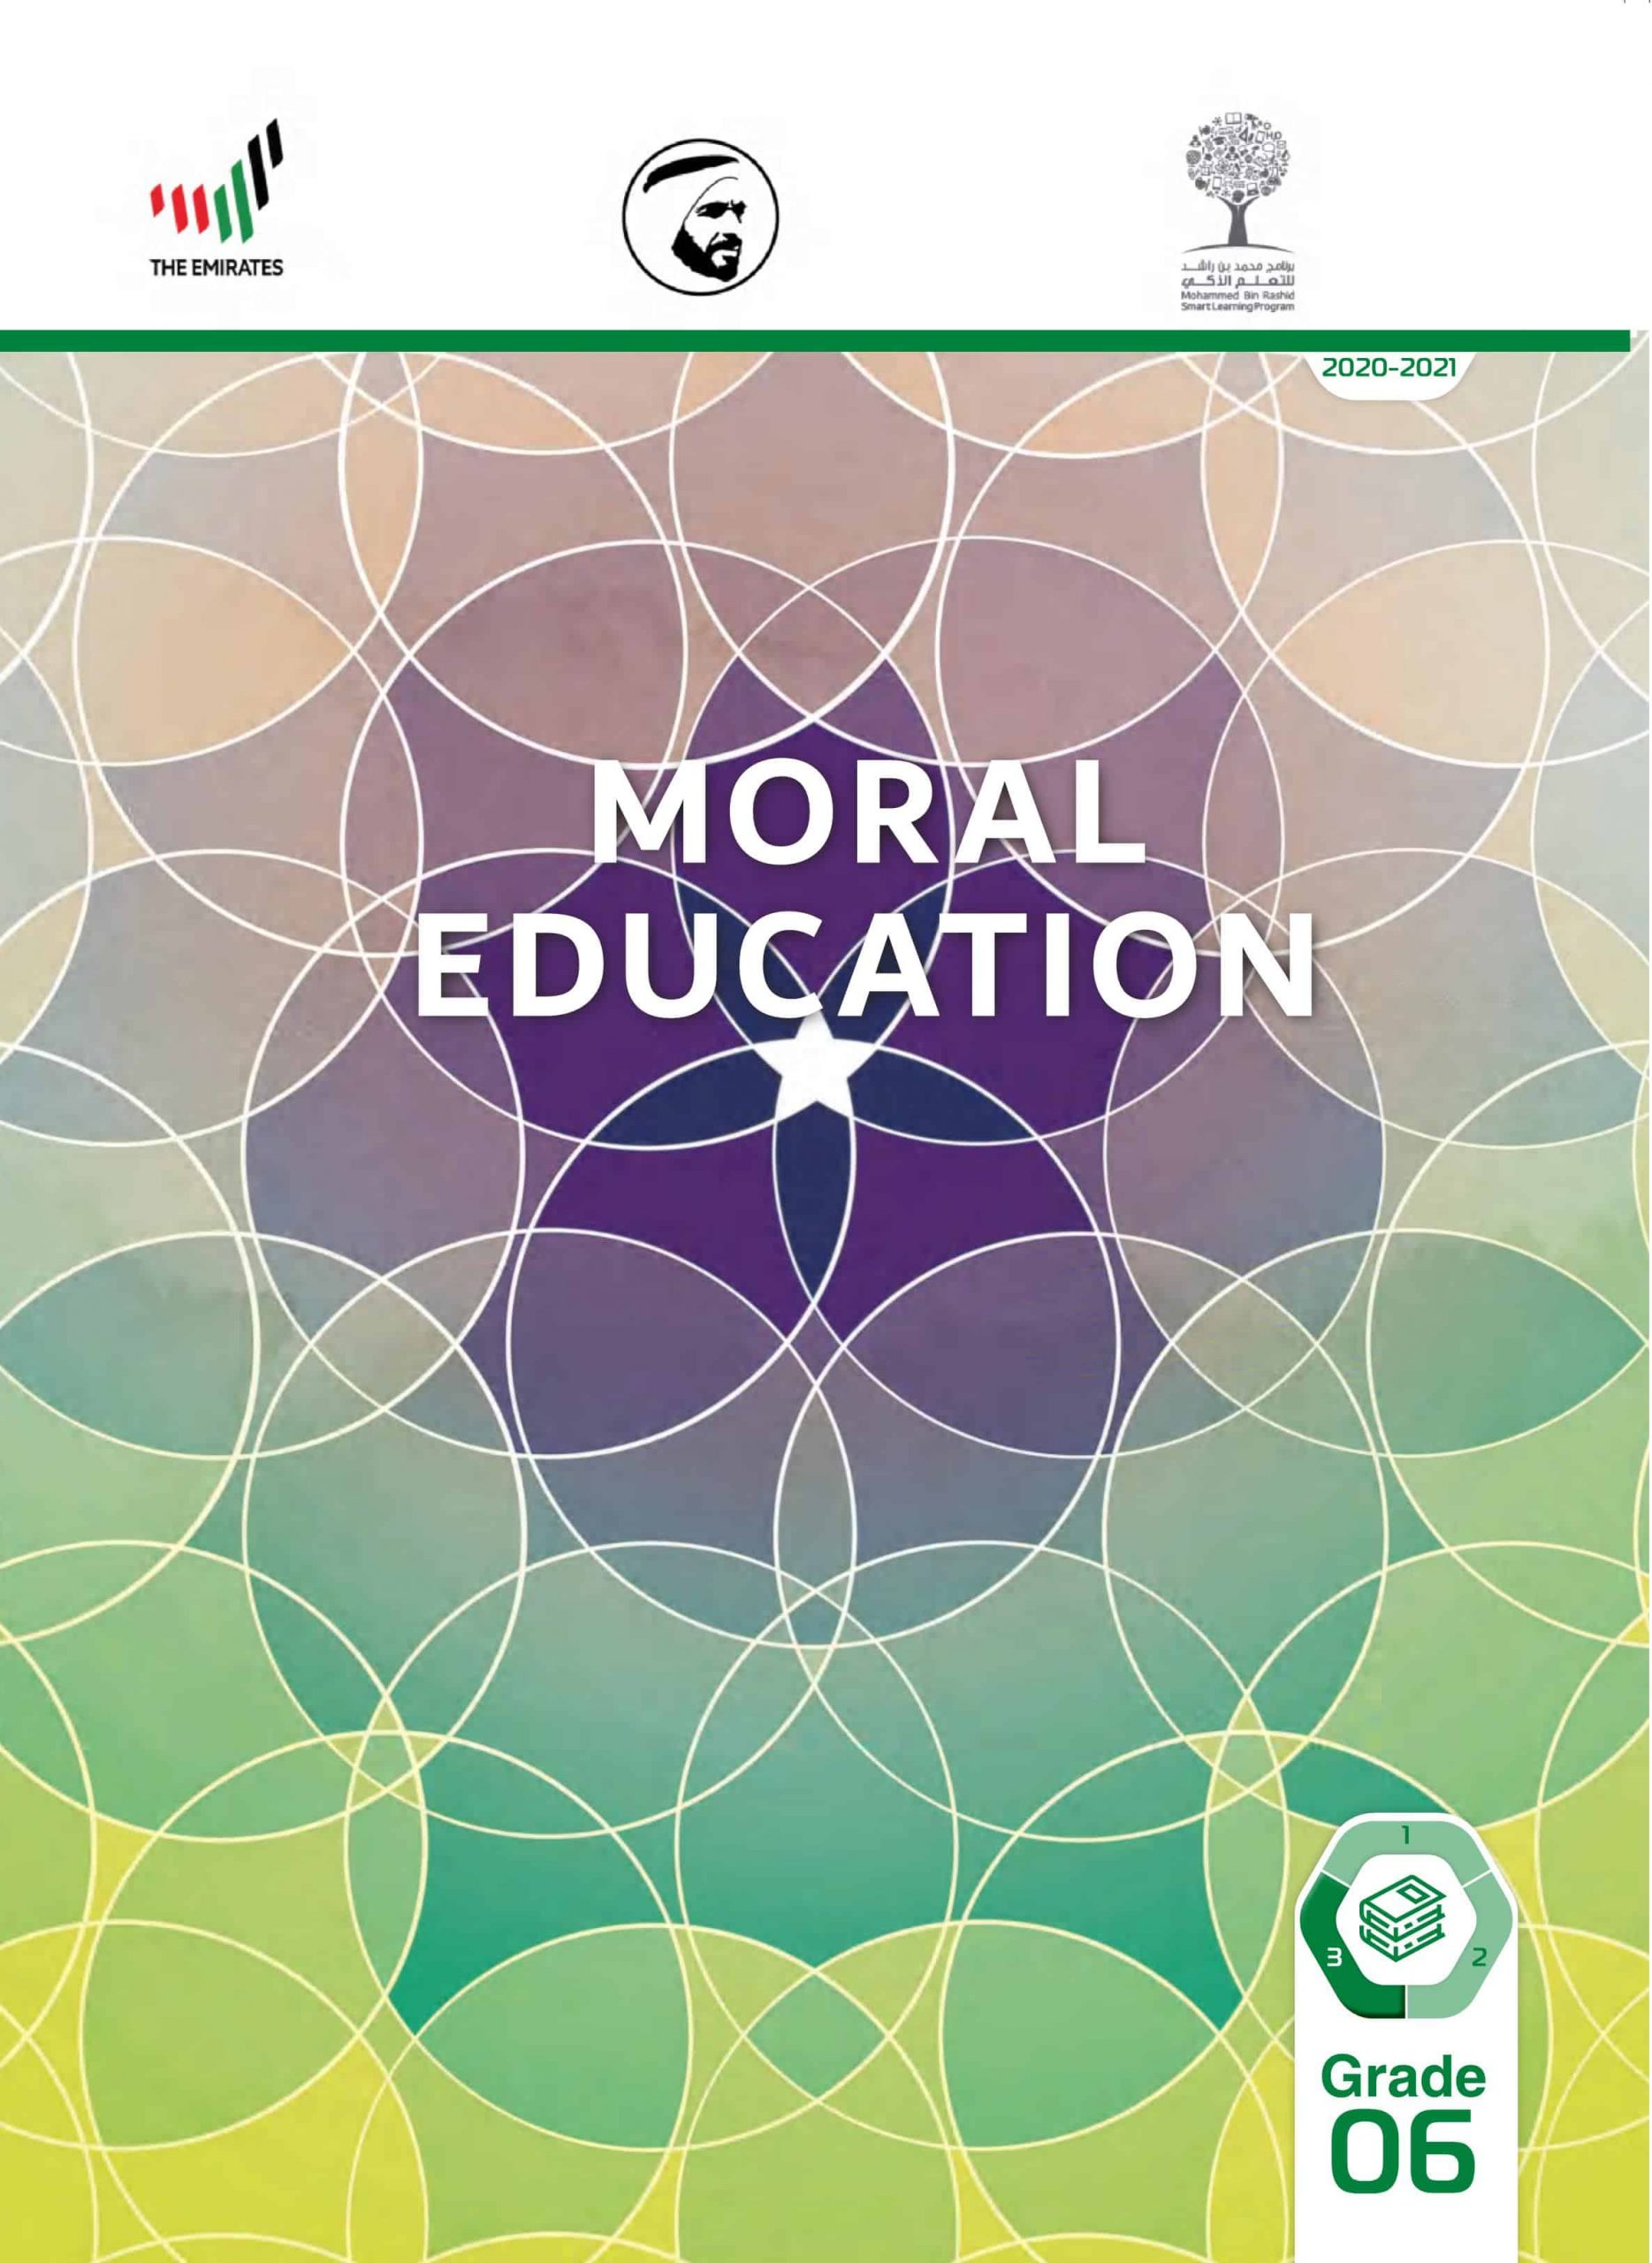 كتاب الطالب بالإنجليزي الفصل الدراسي الثالث 2020-2021 الصف السادس مادة التربية الأخلاقية